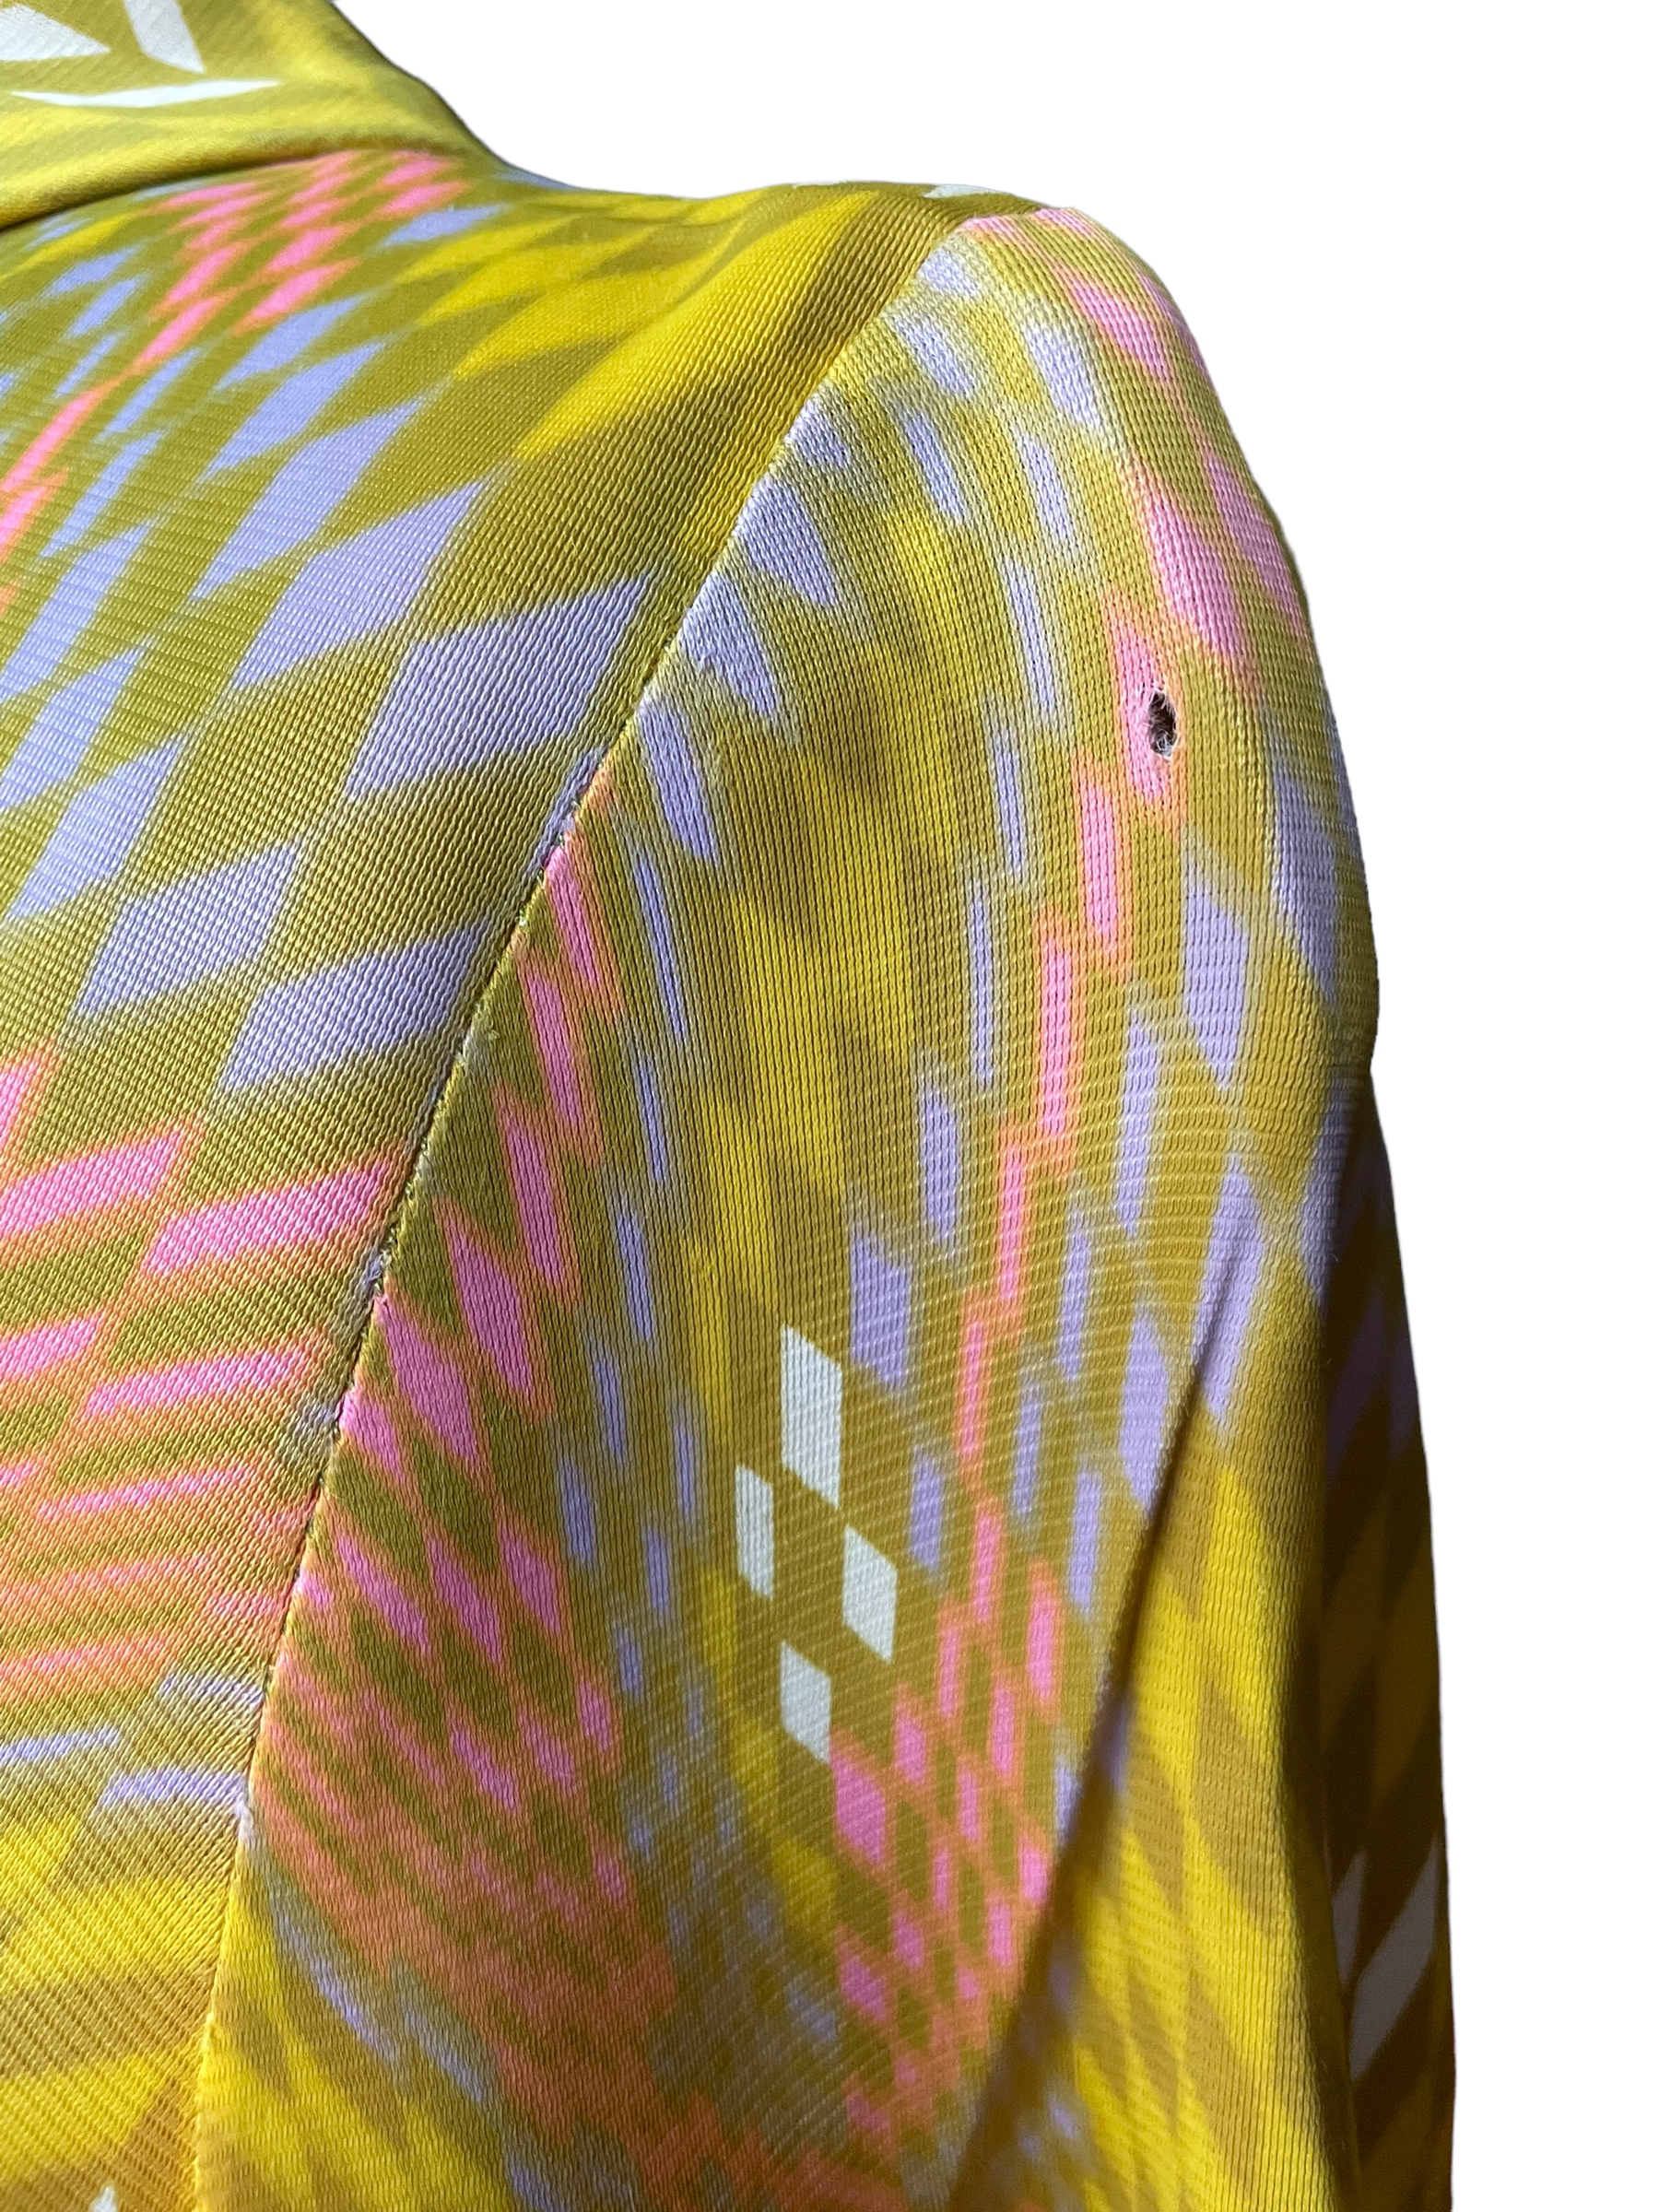 Small hole on left sleeve Vintage 1960s Geometric Pattern Dress SZ M | Seattle Vintage Dresses | Barn Owl Vintage